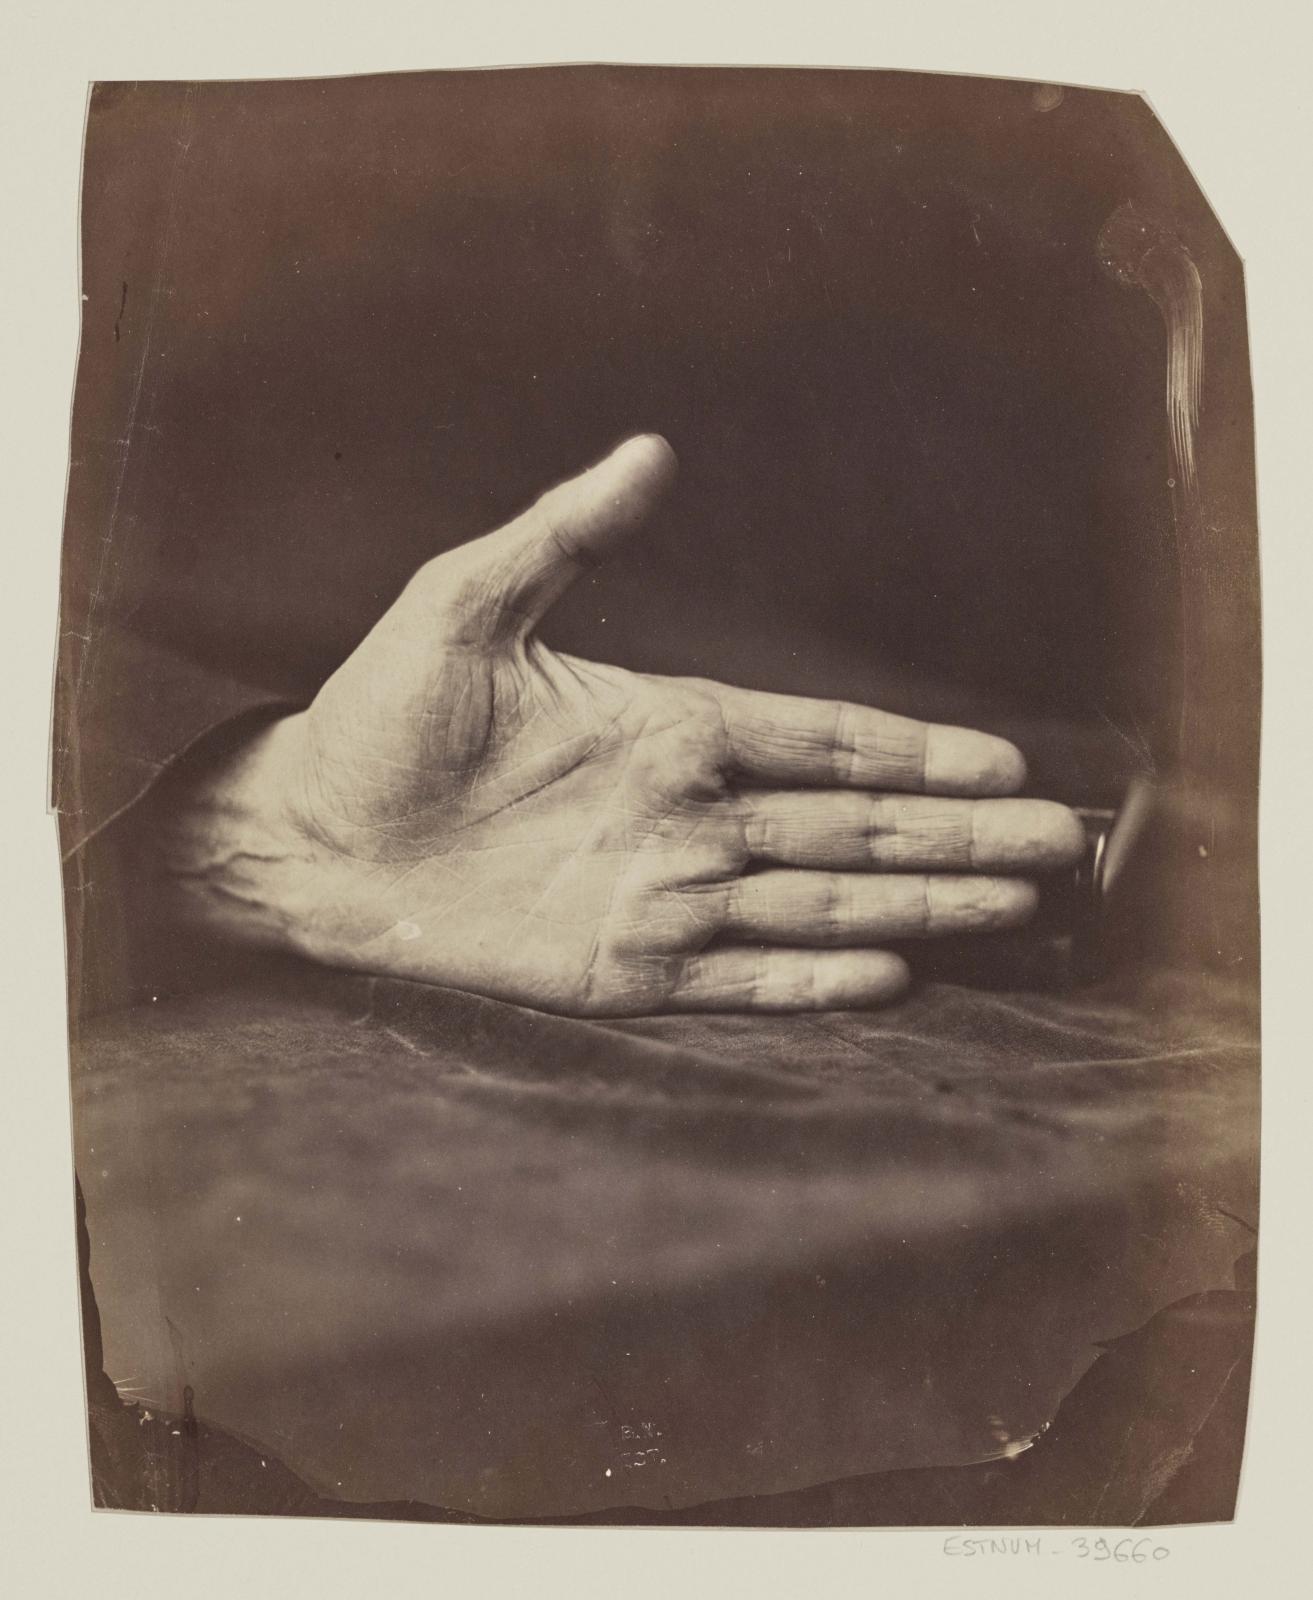 Félix Nadar, Main du banquier, cliché obtenu à la lumière diurne. Épreuve tirée à la lumière électrique, 1861, BnF, département des Estampes et de la 